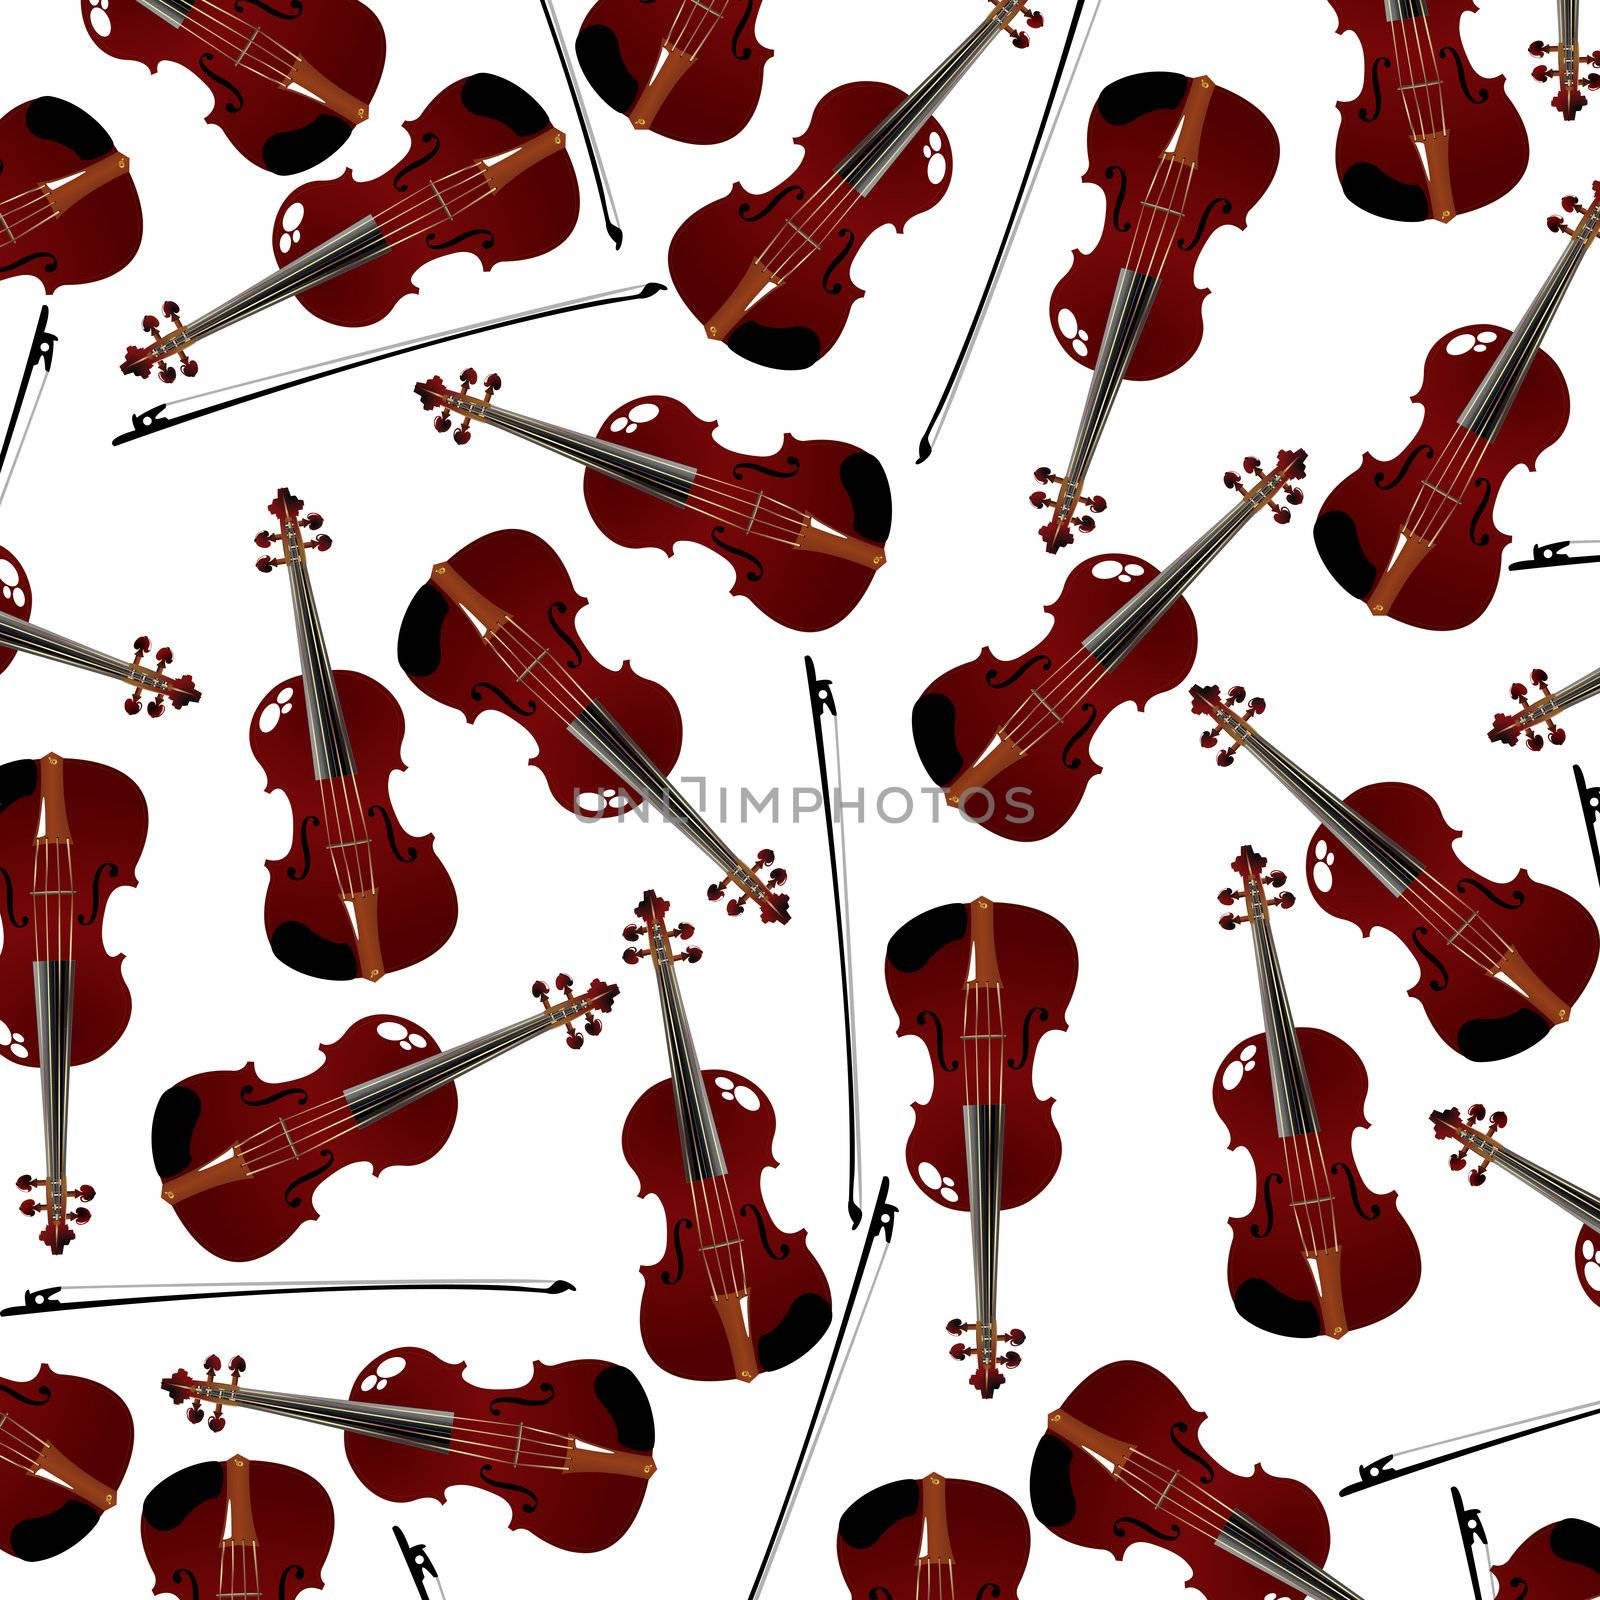 red violins by Lirch